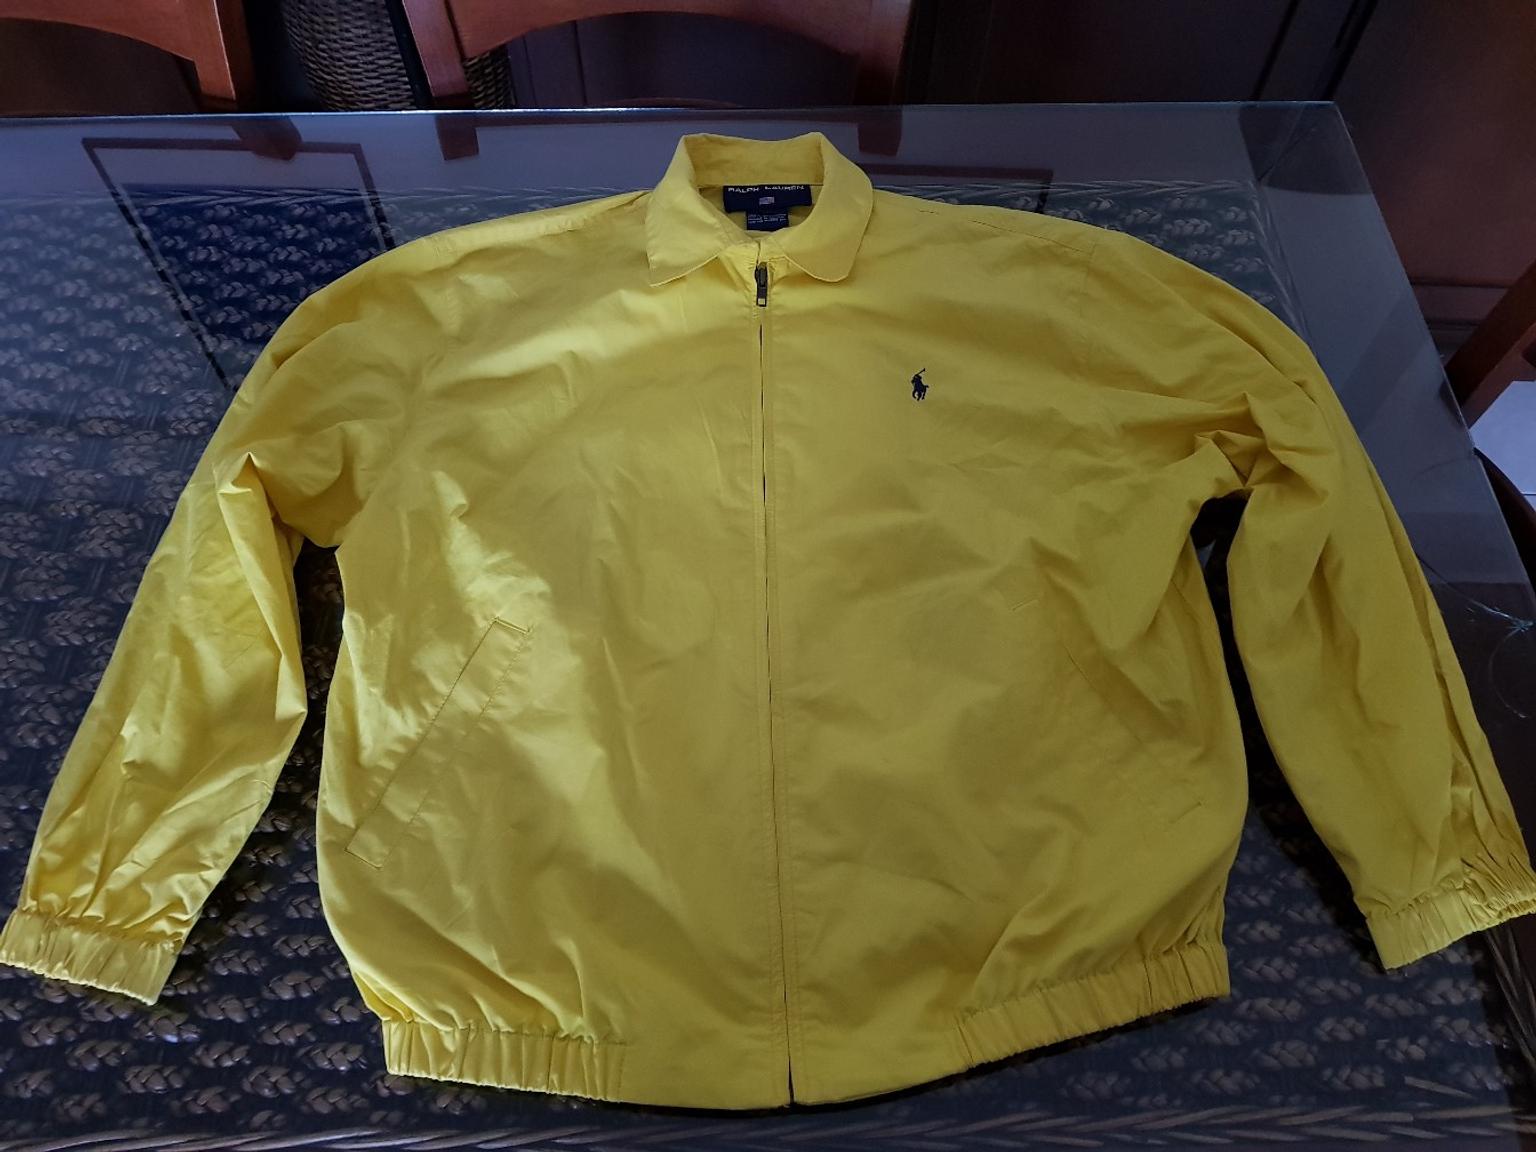 vintage ralph lauren bomber jacket